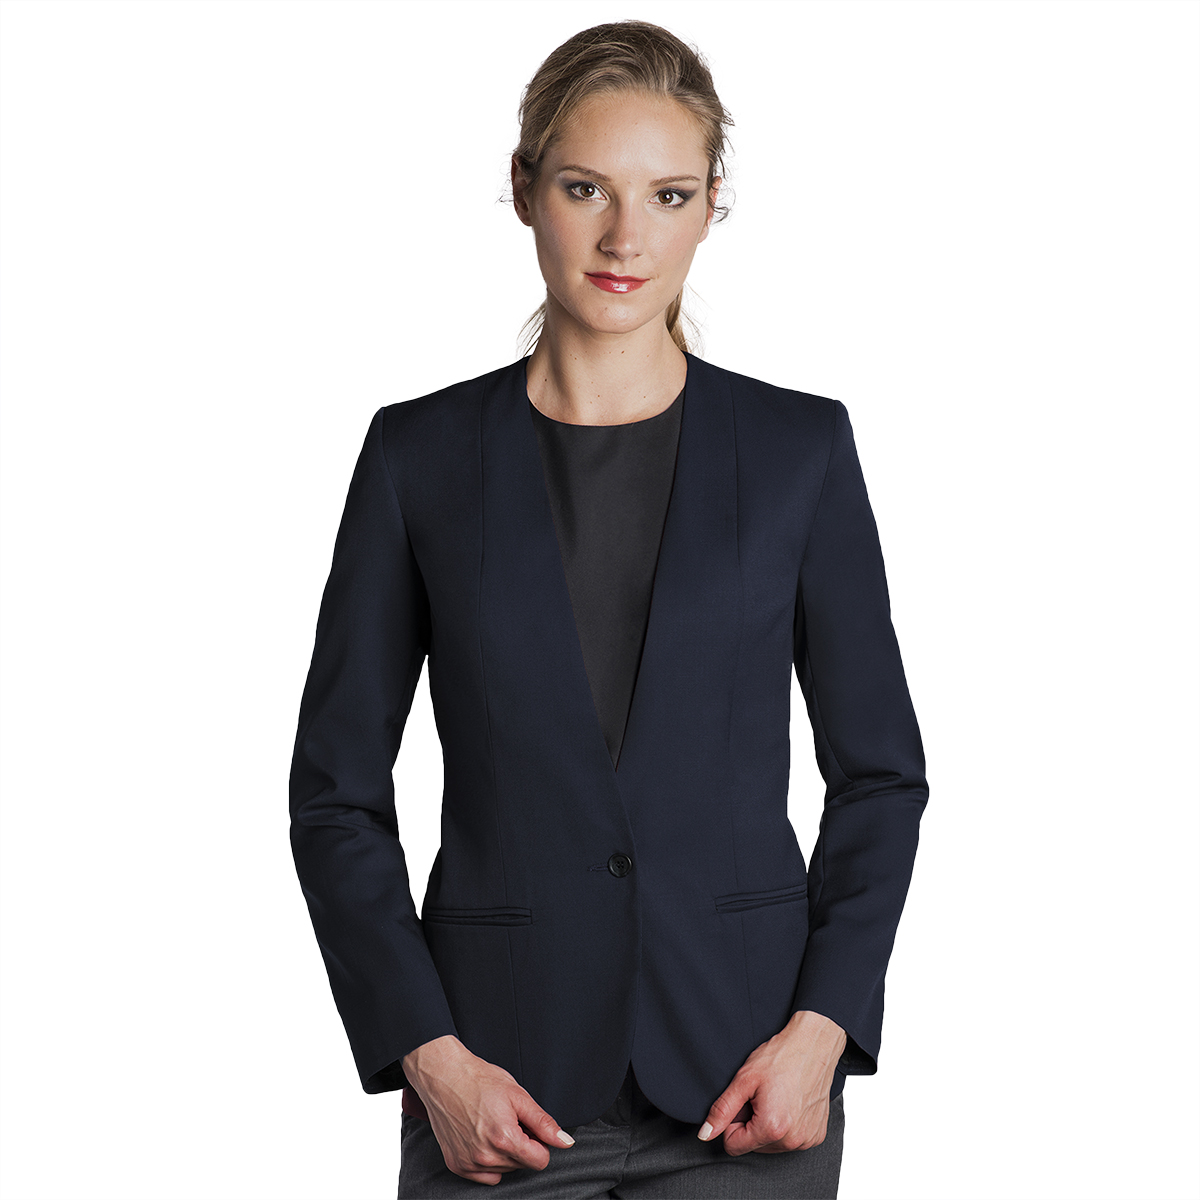 Executive Apparel Women's Navy Easywear Single Breasted 2-Button Blazer 2